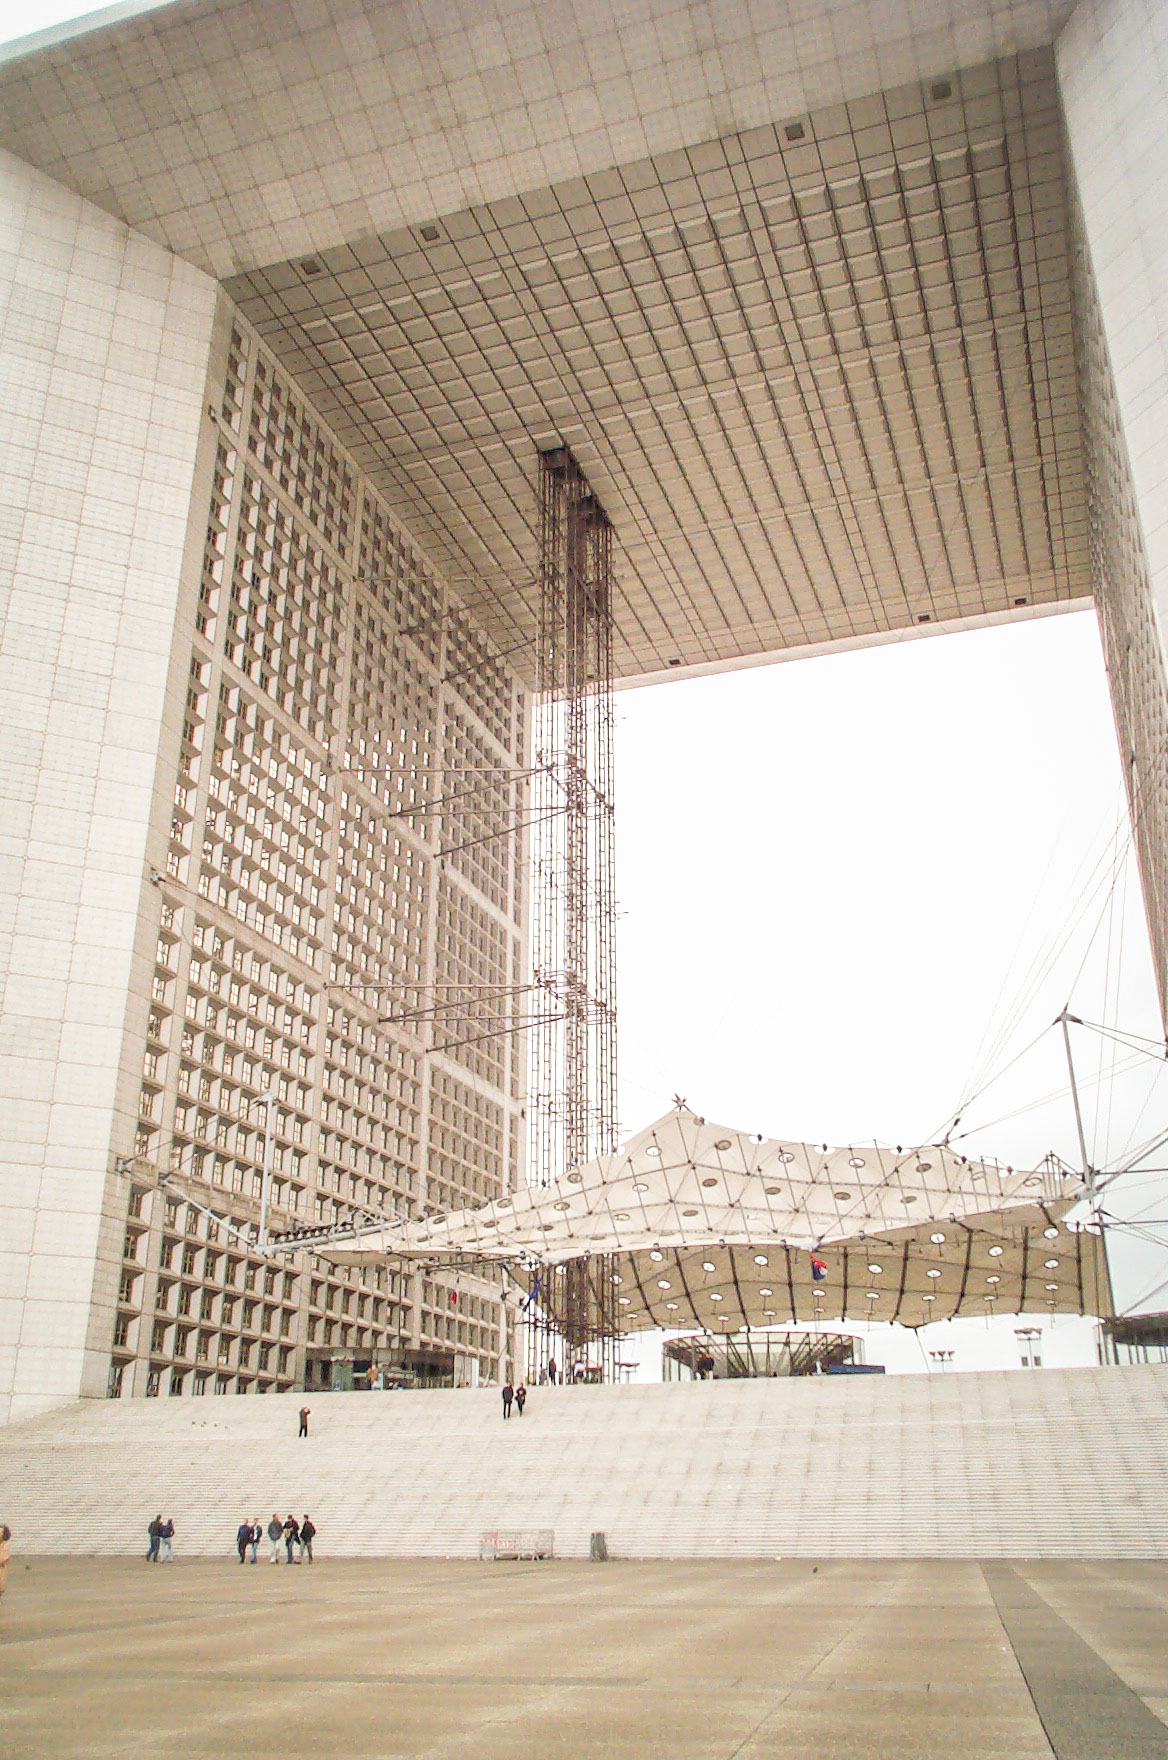 The Grande Arche de la Défense, just outside Paris